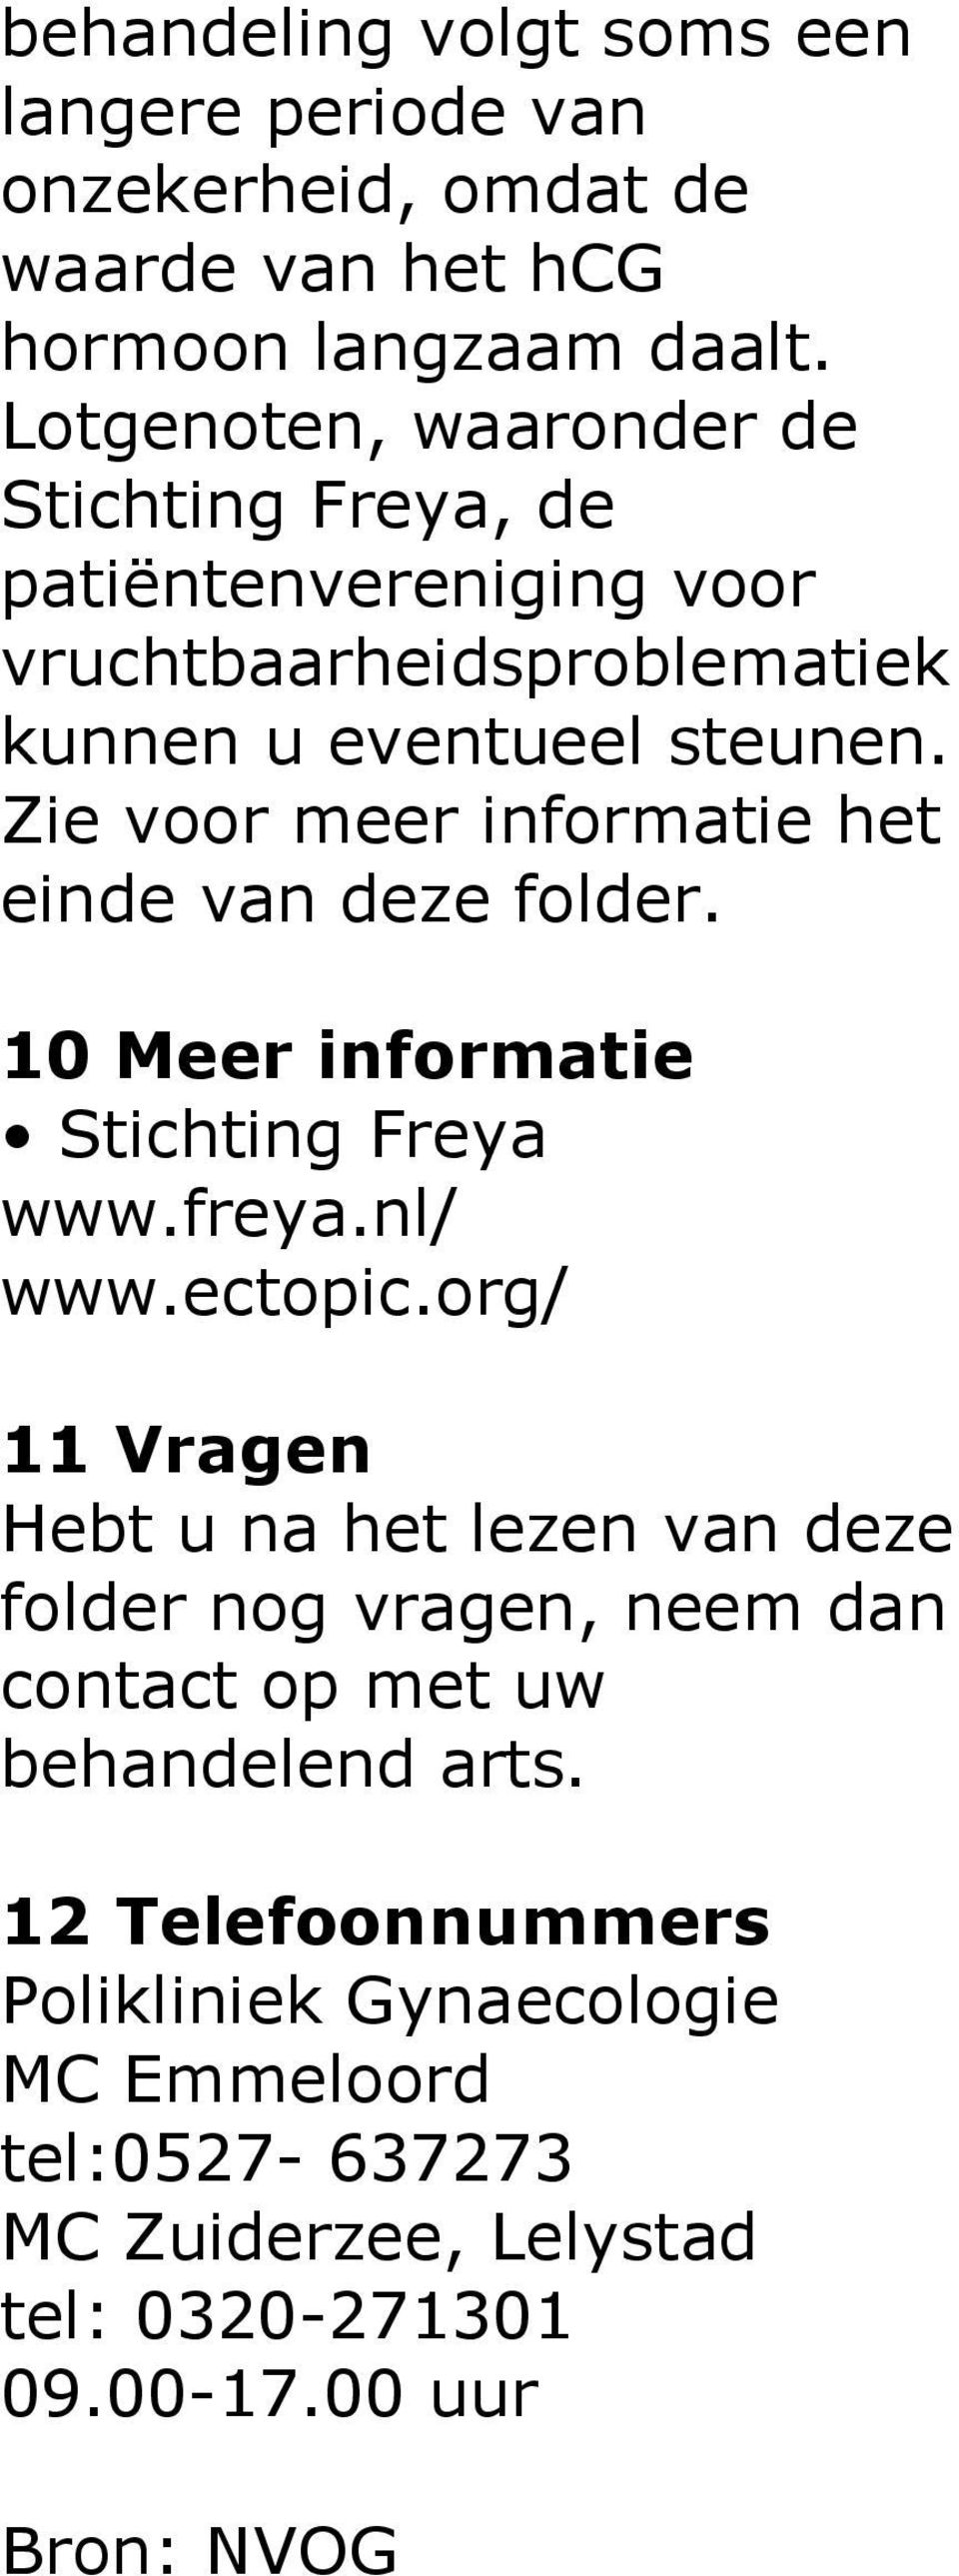 Zie voor meer informatie het einde van deze folder. 10 Meer informatie Stichting Freya www.freya.nl/ www.ectopic.